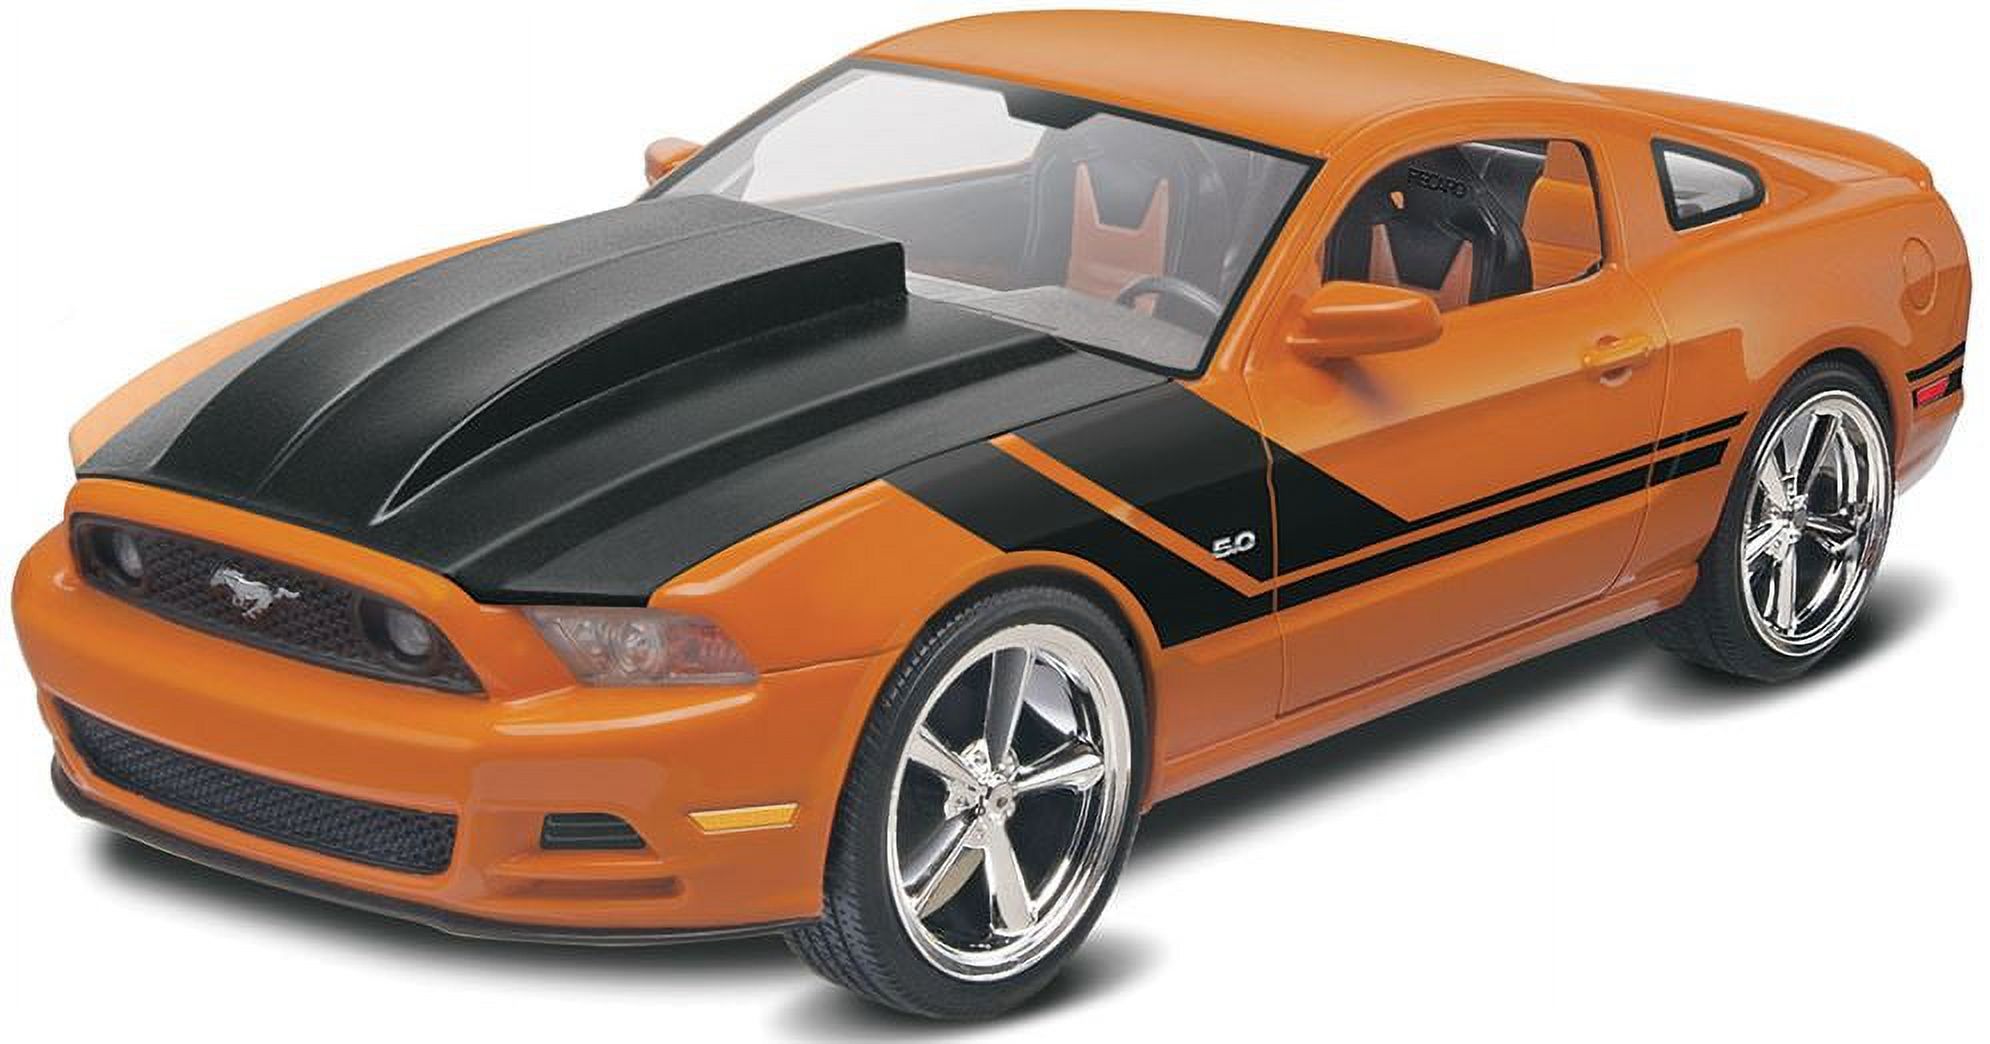 REVELL-MONOGRAM 2014 Mustang Gt Car Model Kit - image 2 of 2